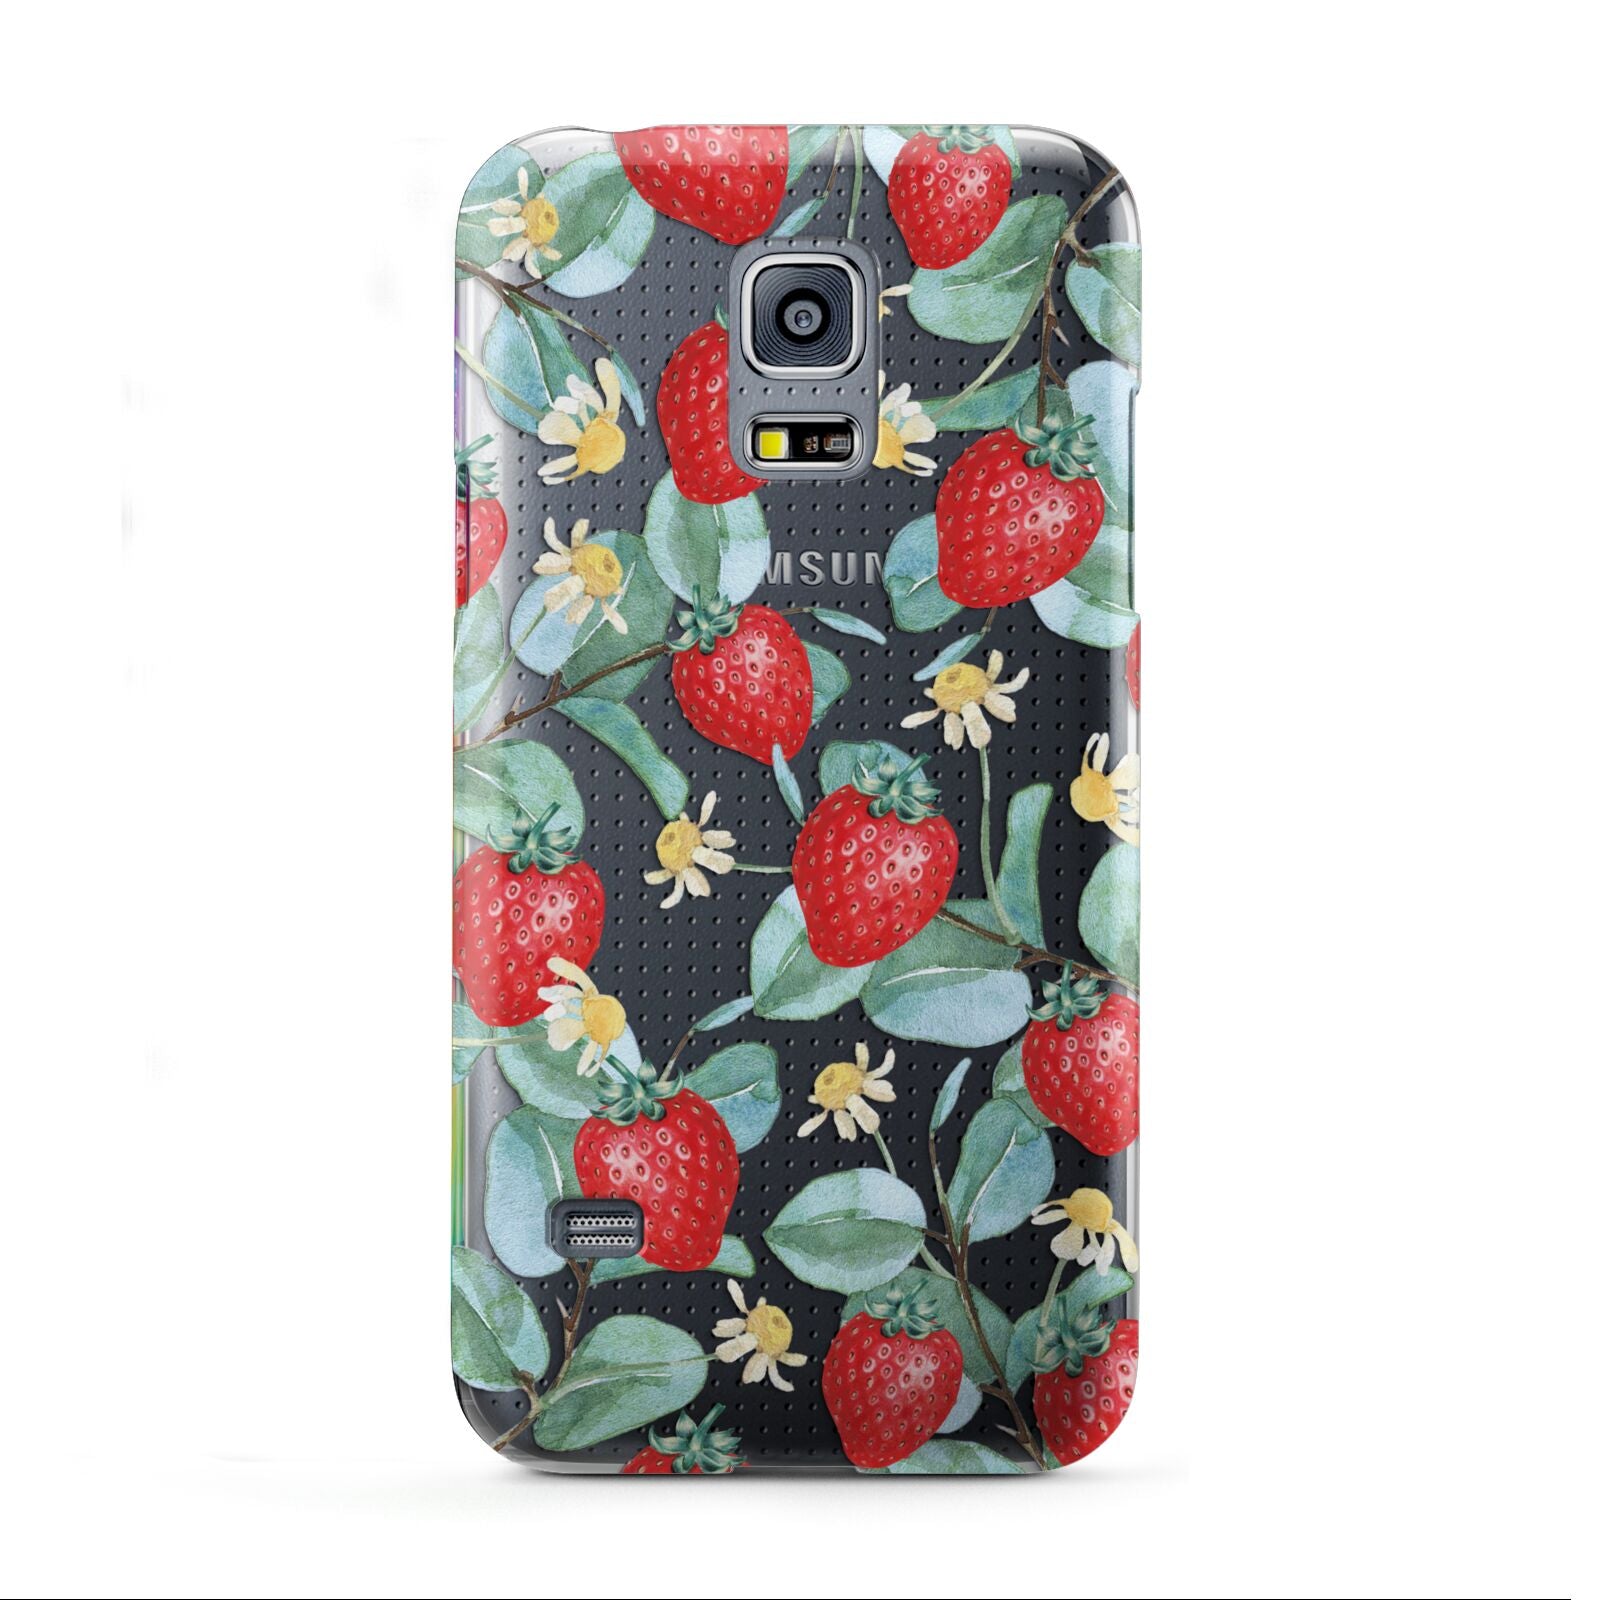 Strawberry Plant Samsung Galaxy S5 Mini Case